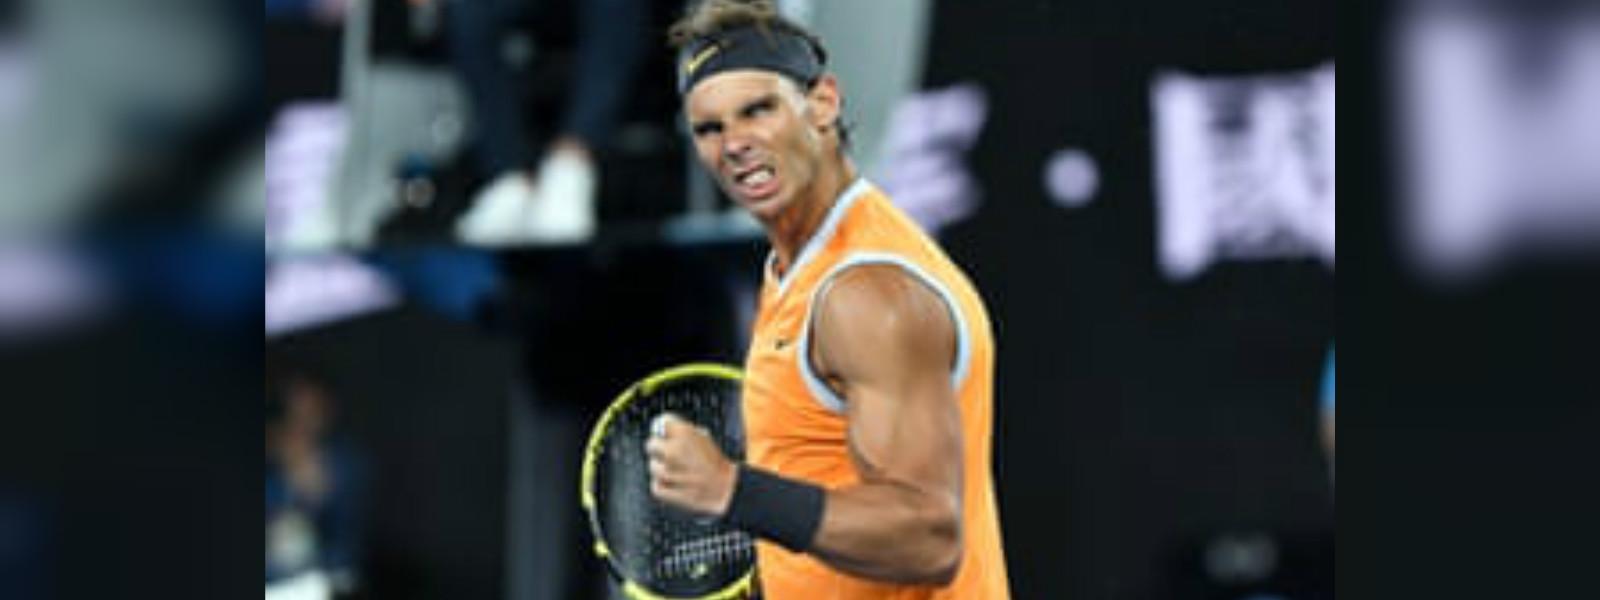 Nadal defeats Tsitsipas to reach Aussie open final